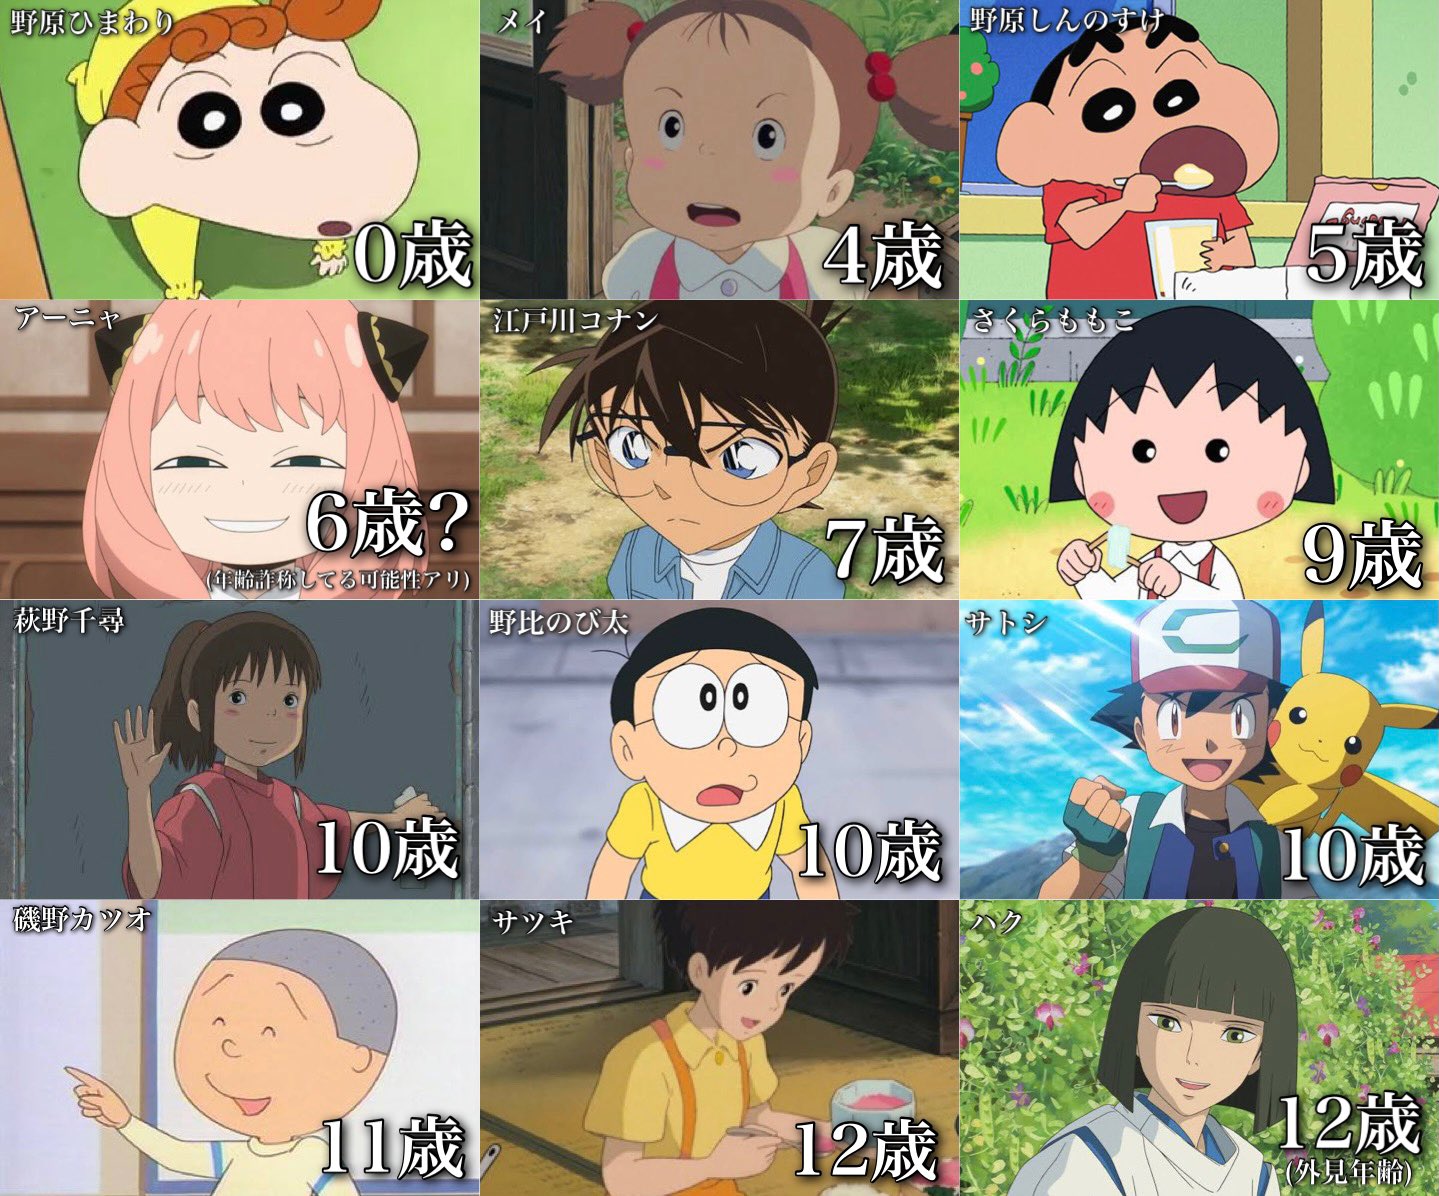 アニメの人気キャラの年齢をまとめたら、意外すぎてびっくり!